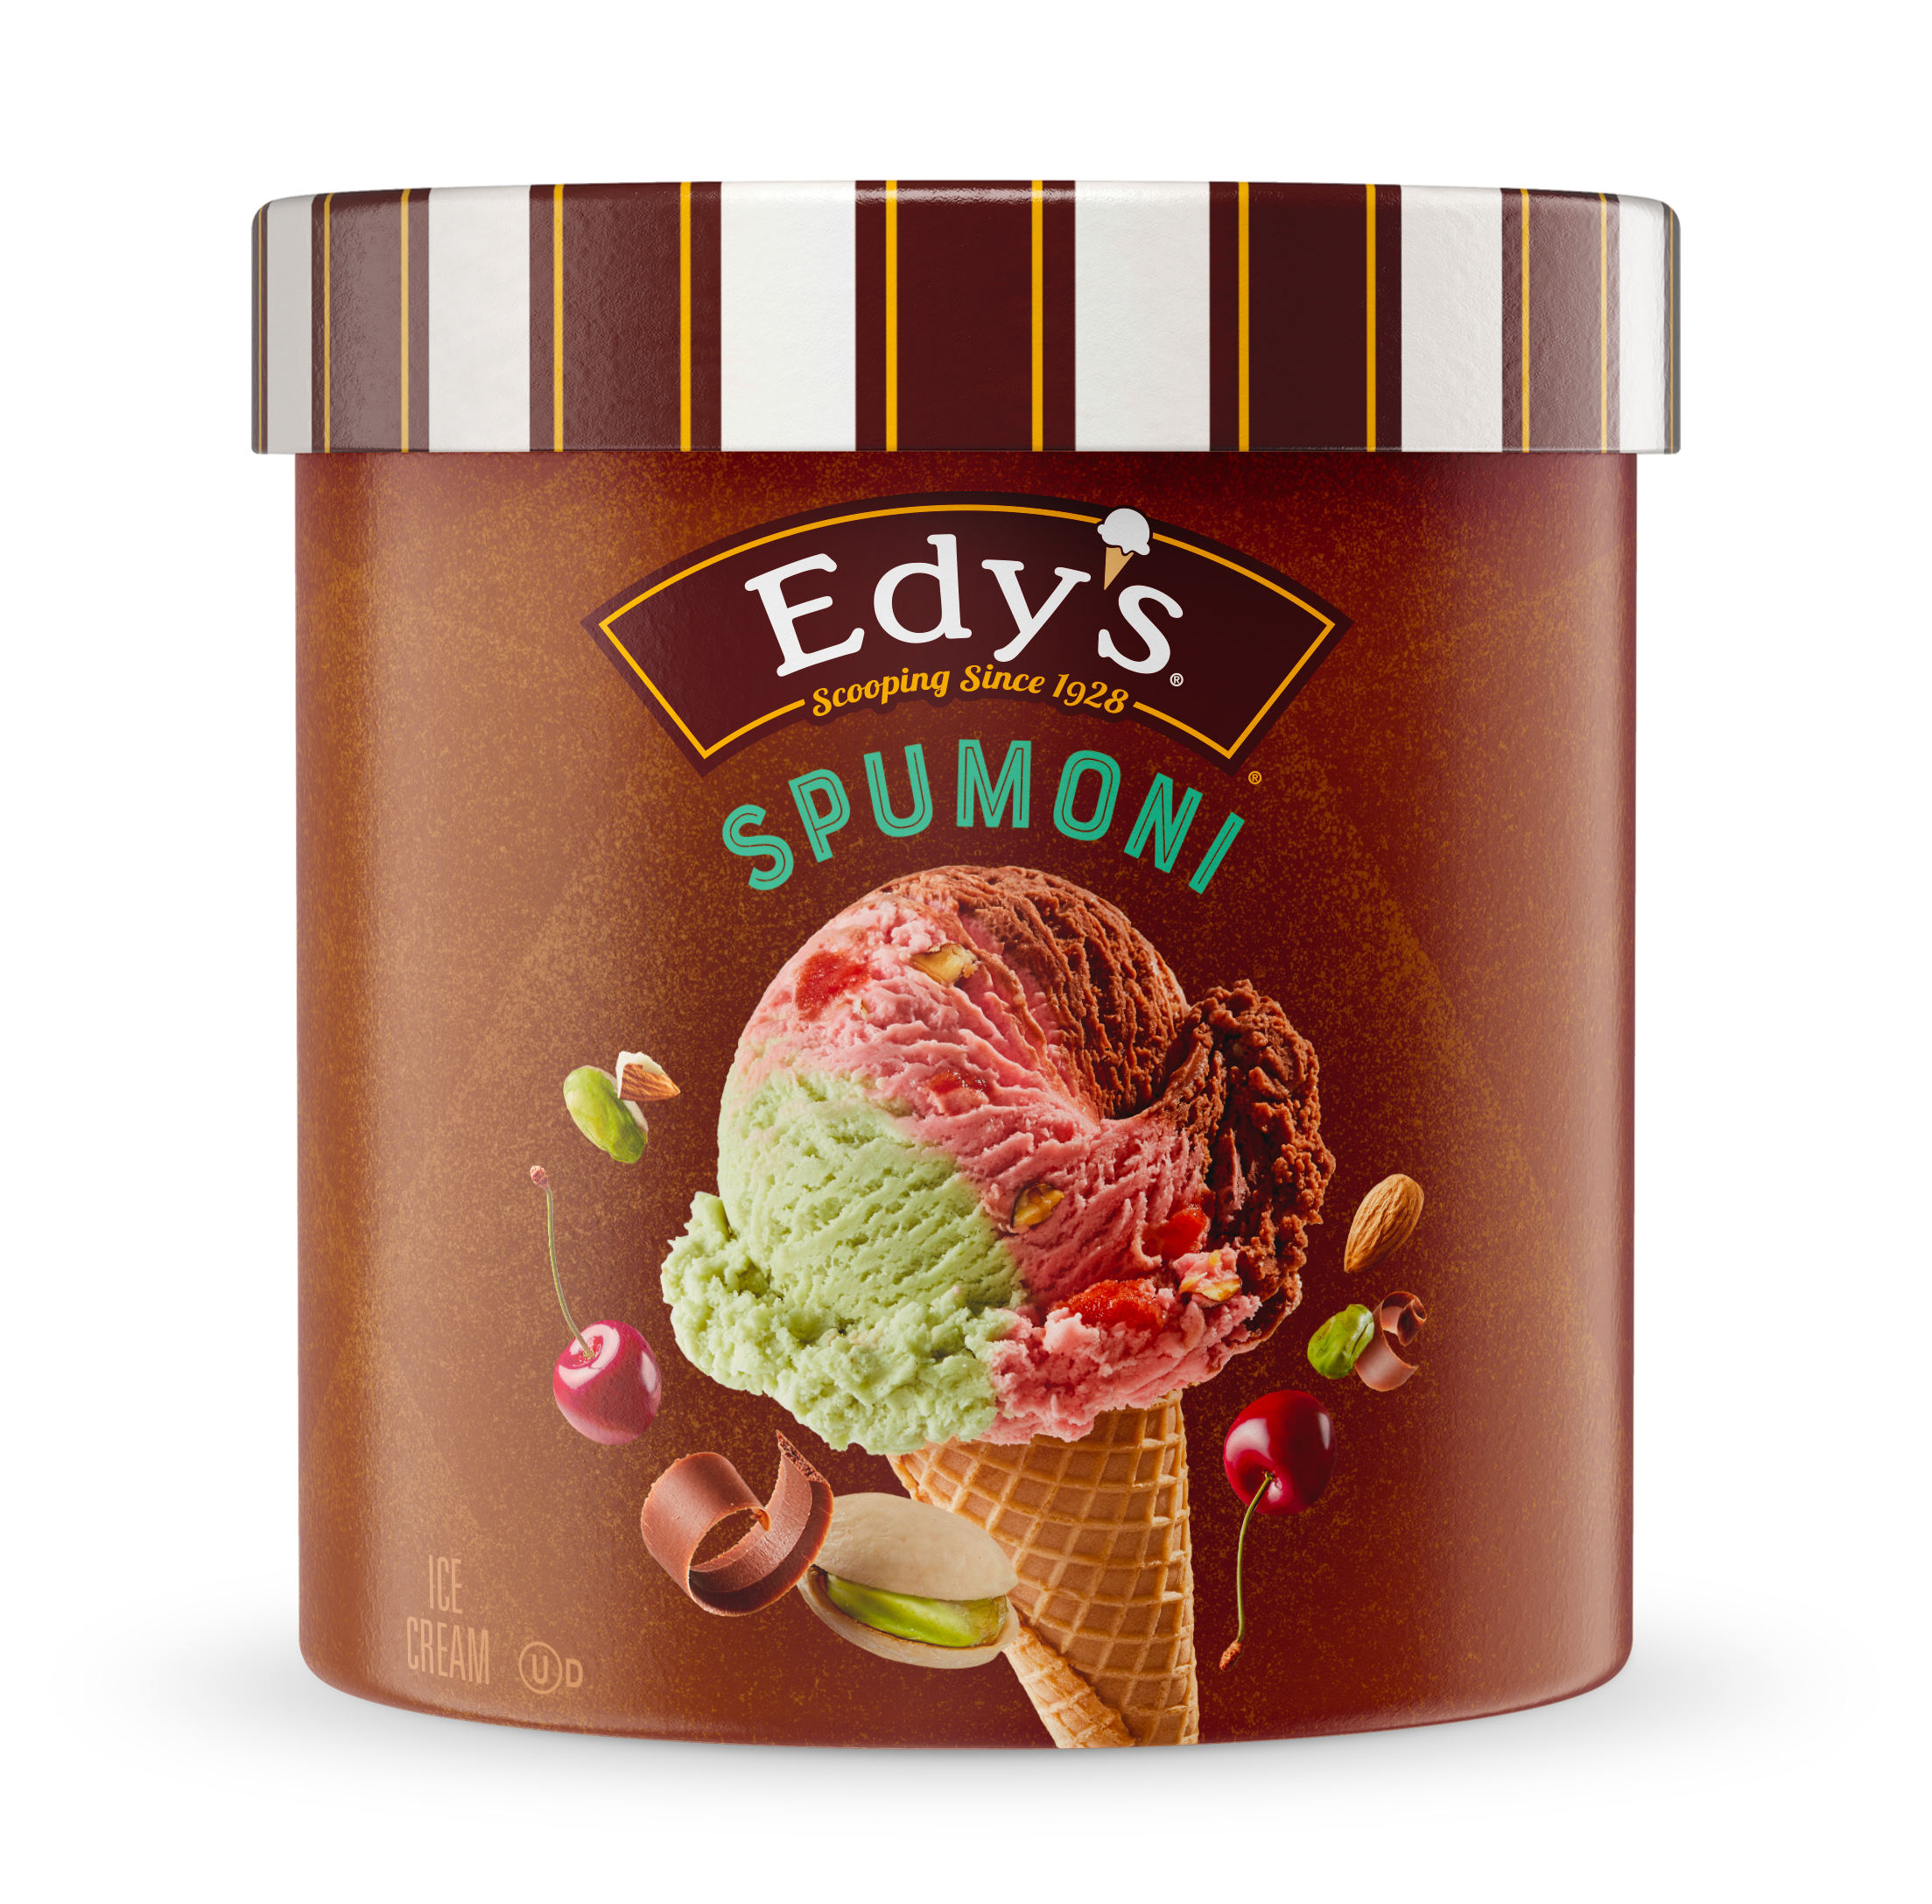 Carton of Edy's spumoni ice cream